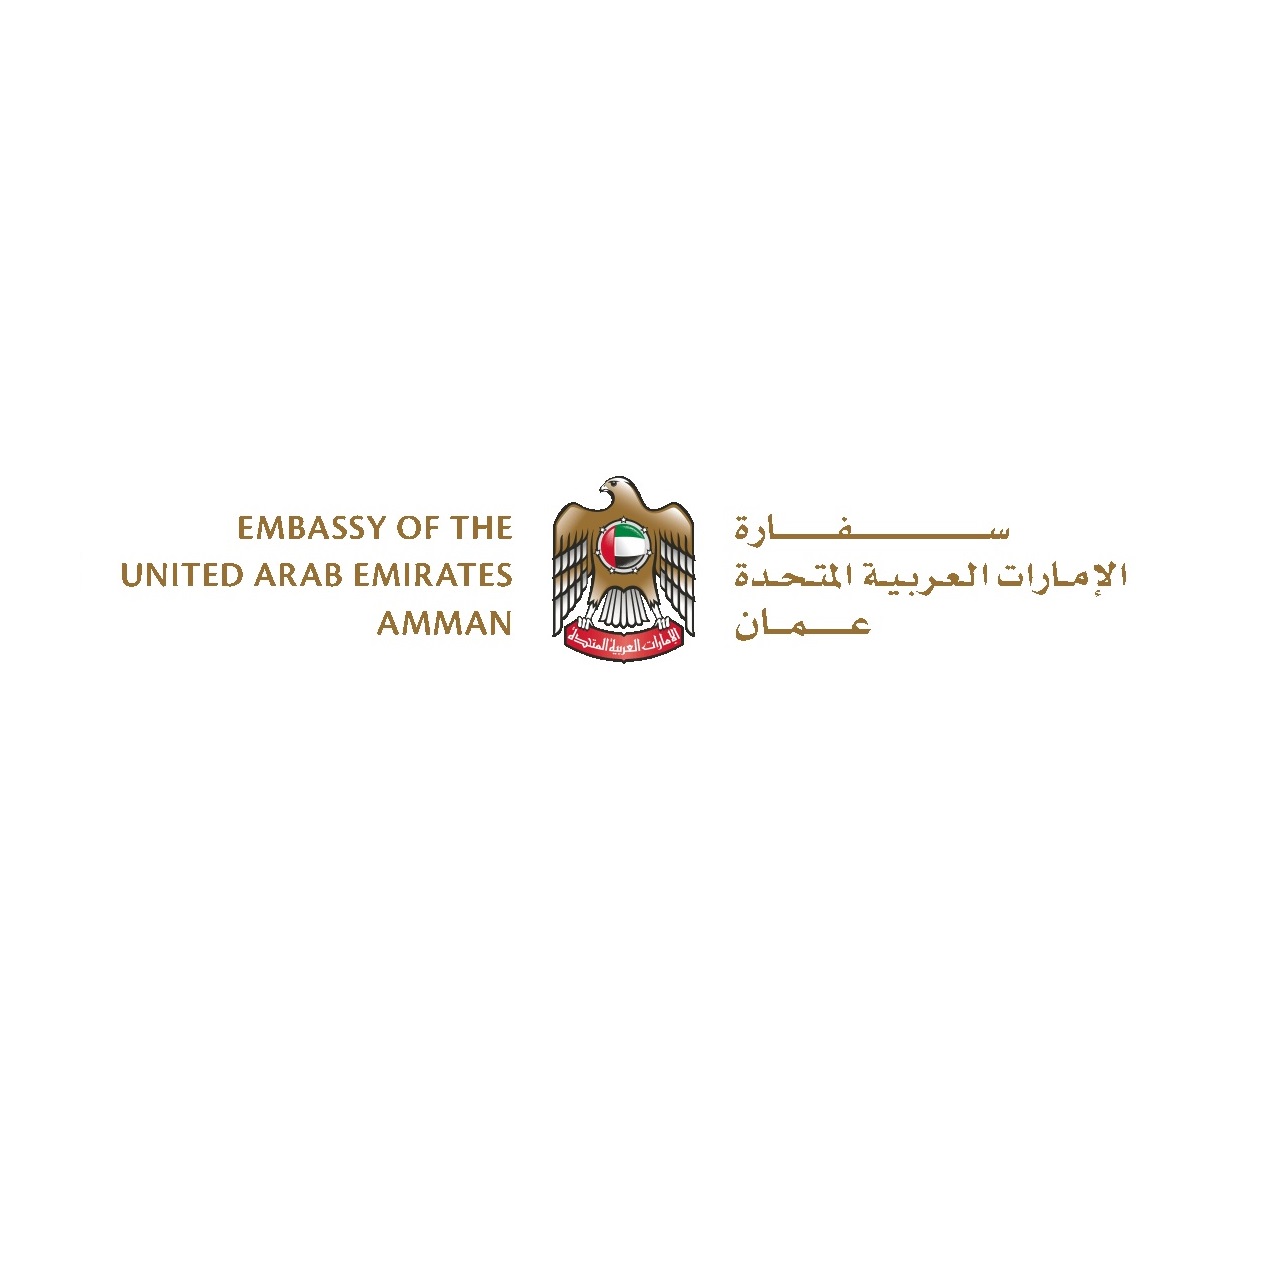 سفارة دولة الامارات تدعو رعاياها في الاردن لتسجيل بياناتهم.